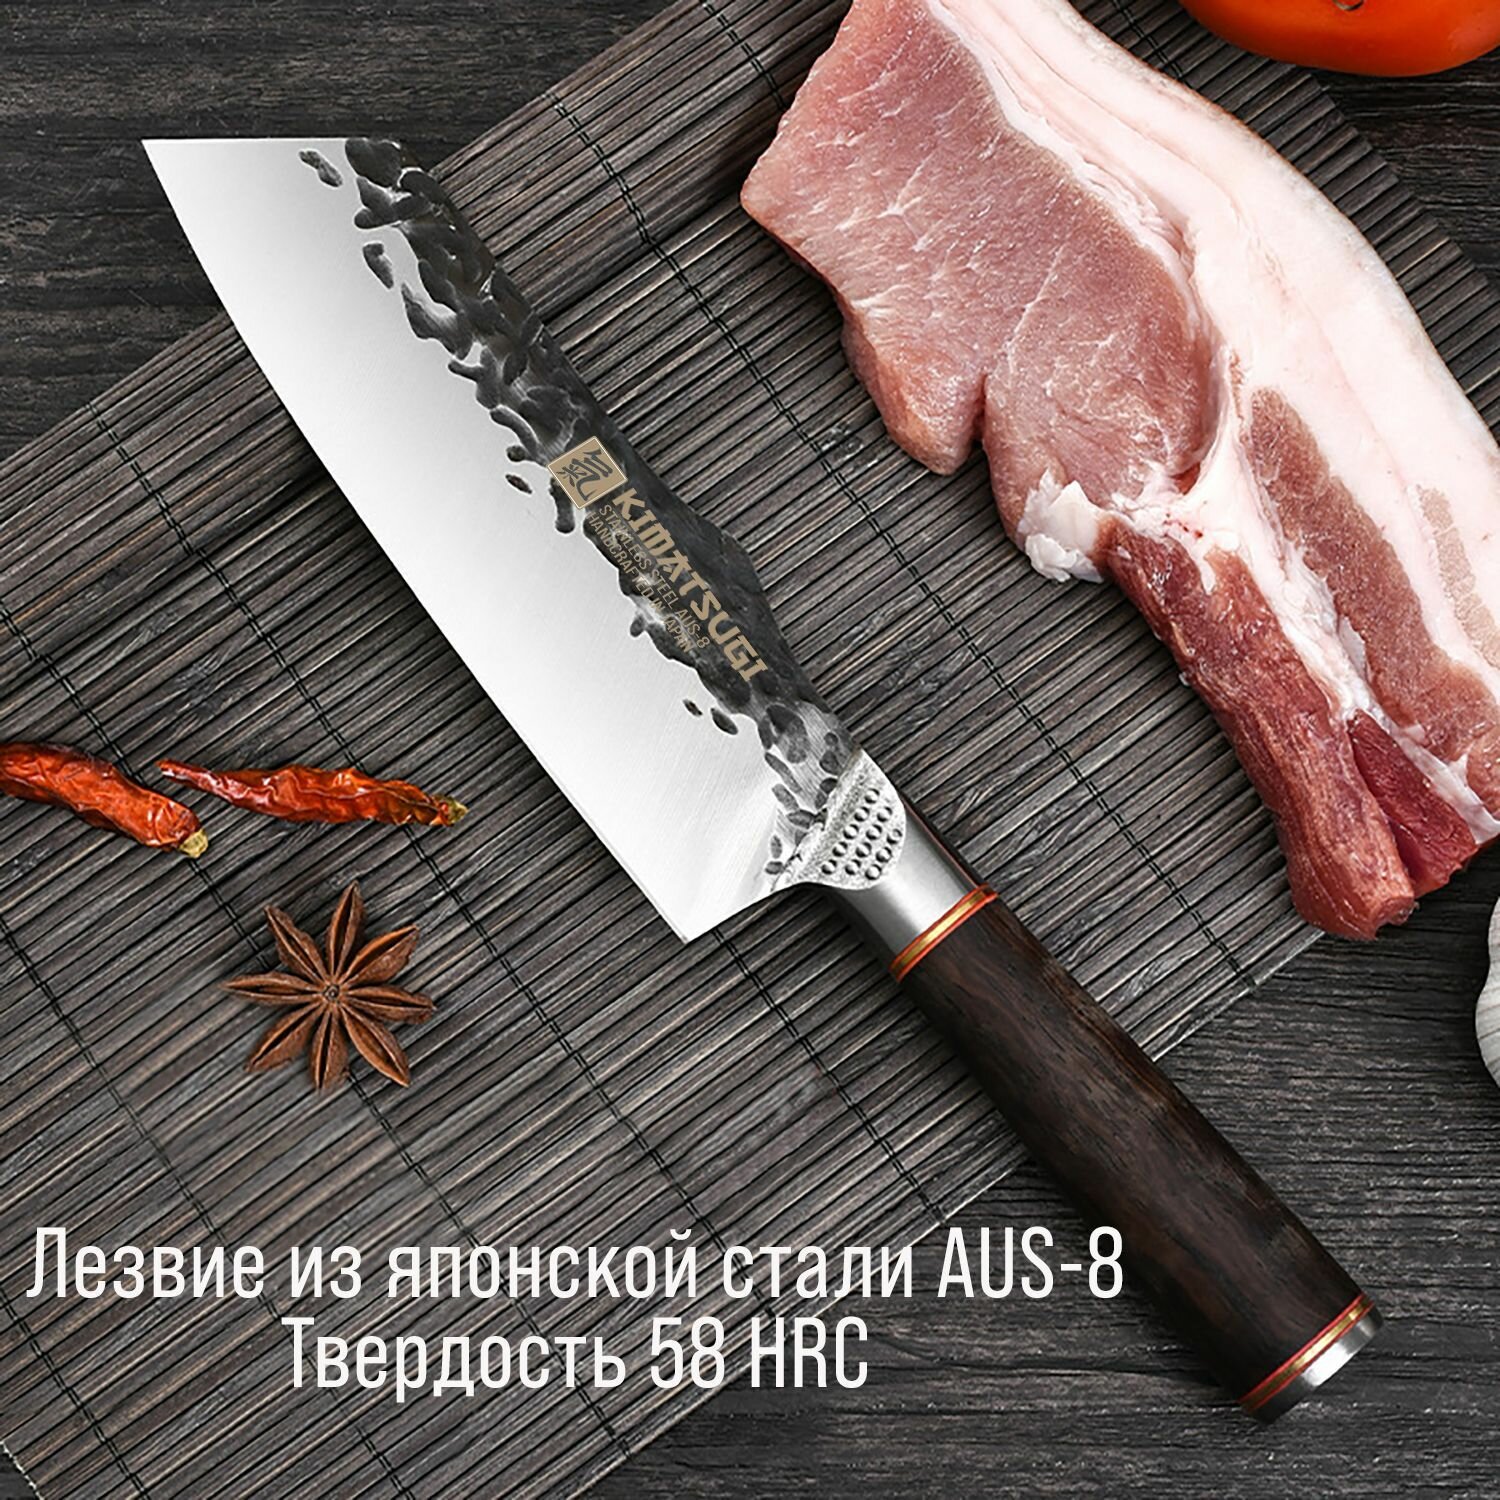 Японский кухонный нож - топорик Kimatsugi Yotsuya. Нож для разделки мяса. Японская сталь AUS-8. Длина лезвия 16 см. С кожаными ножнами